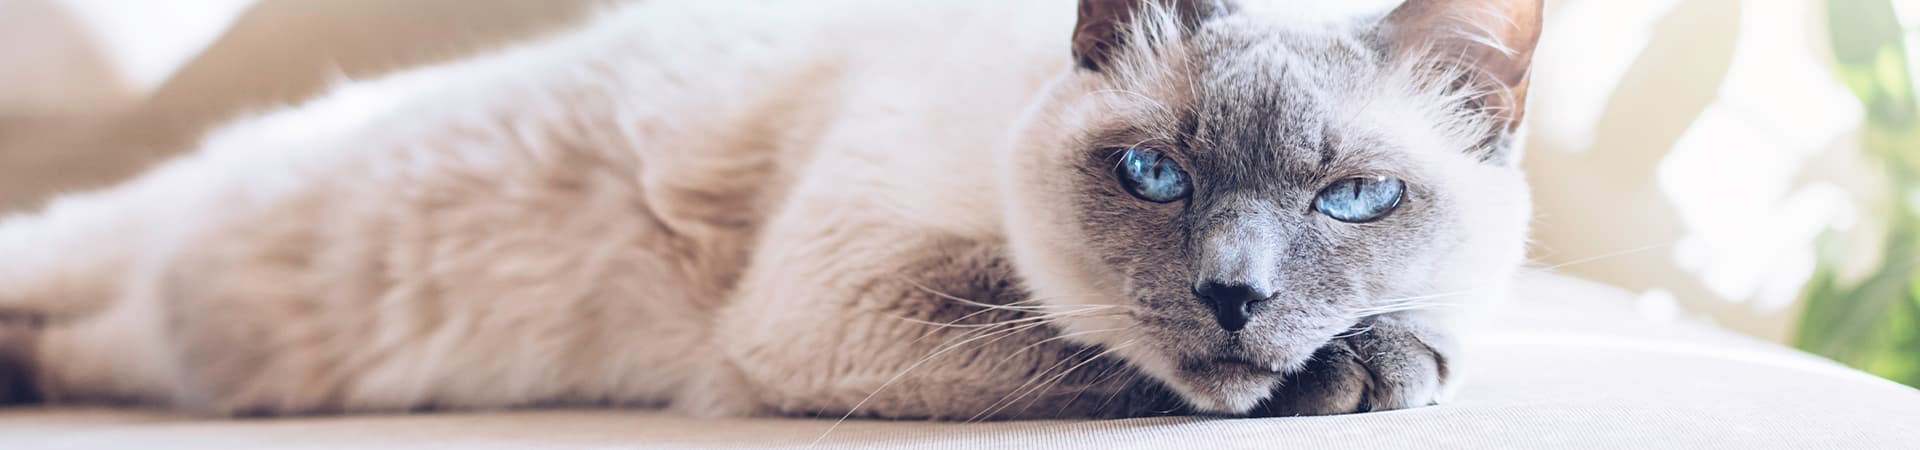 Katze mit blauen Augen liegt gemütlich auf dem Sofa